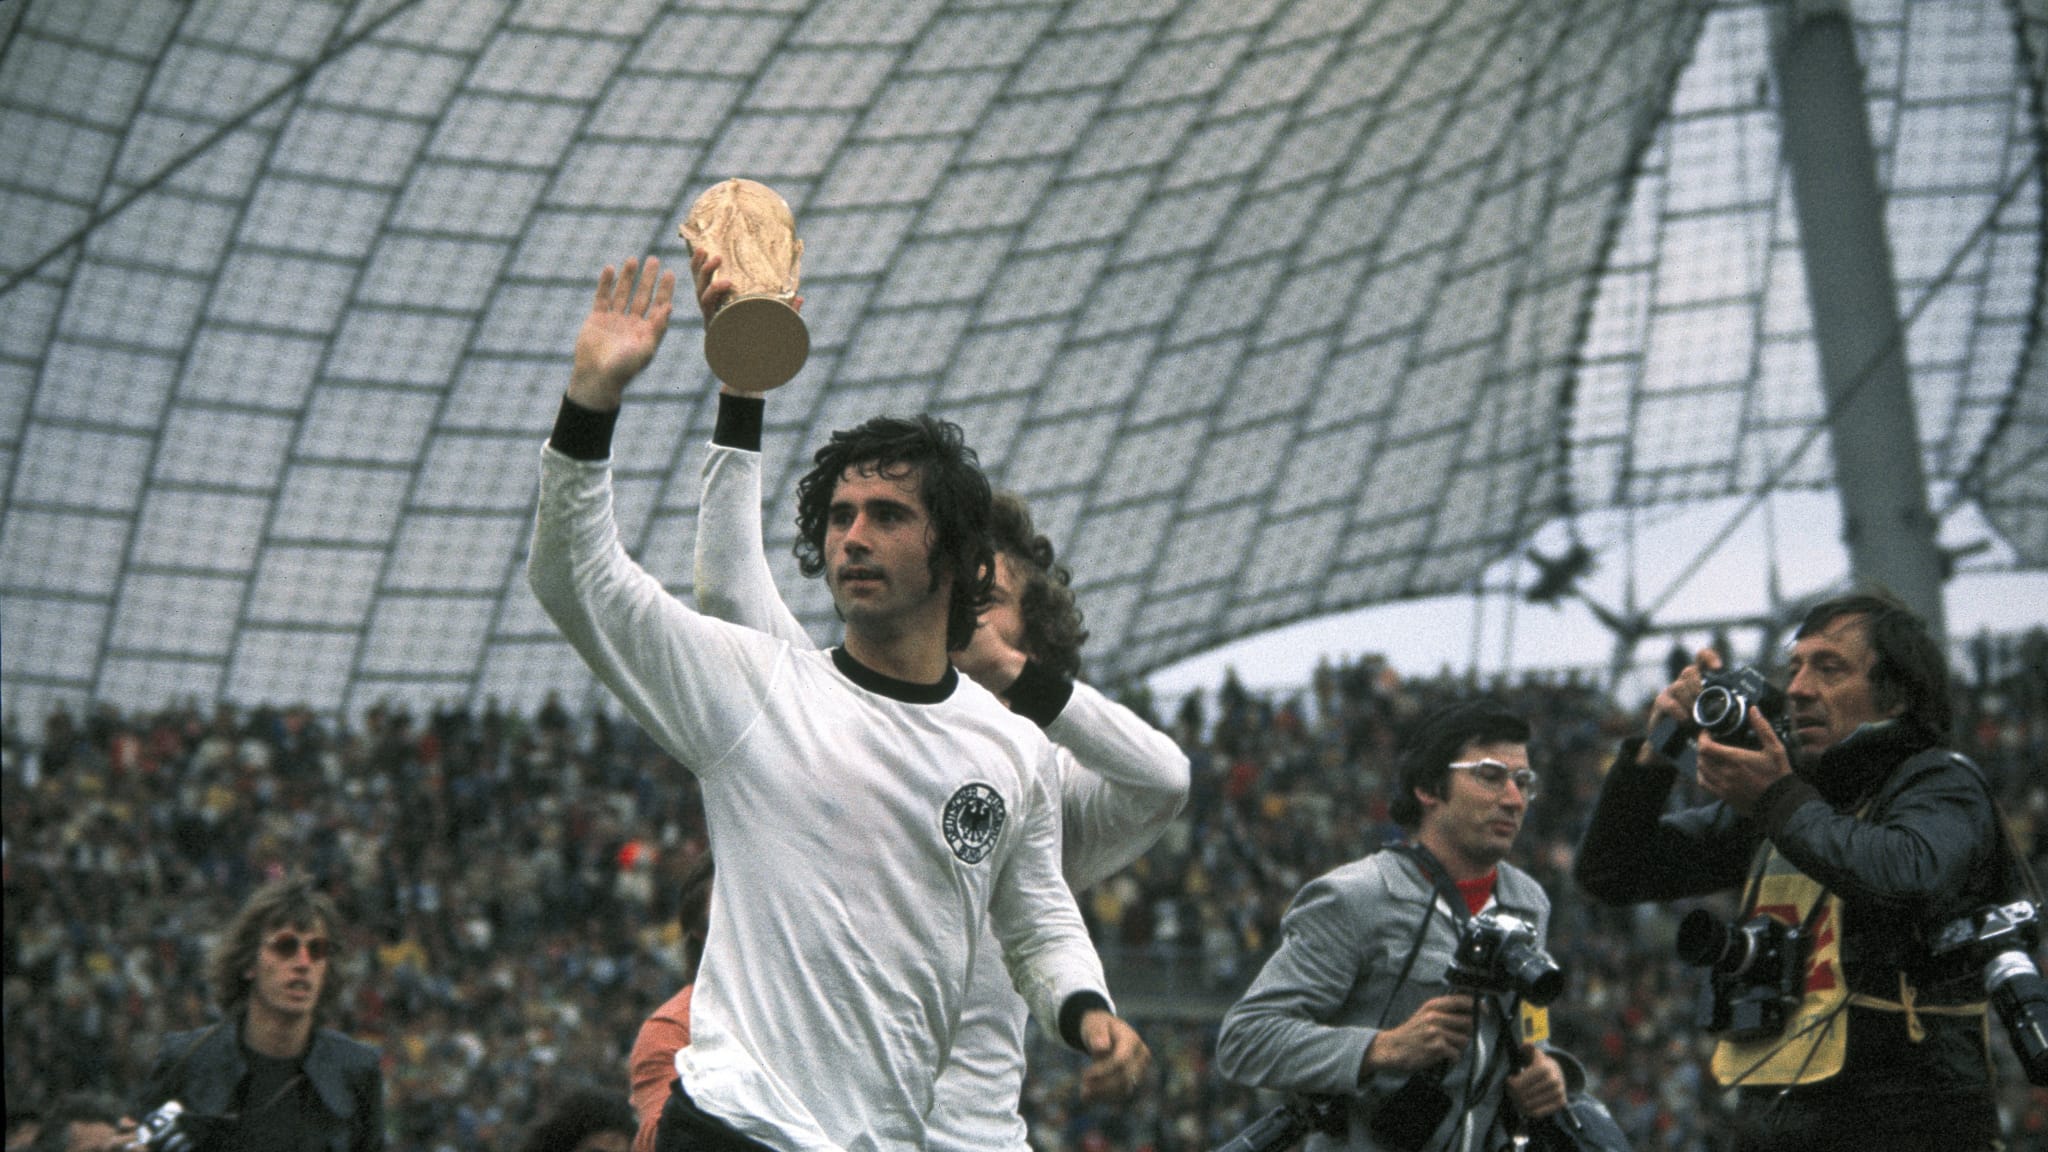 Xếp hạng 10 cầu thủ Đức xuất sắc nhất mọi thời đại: Ballack không đủ xuất sắc để đến đây, Beckenbauer chỉ đứng thứ 2